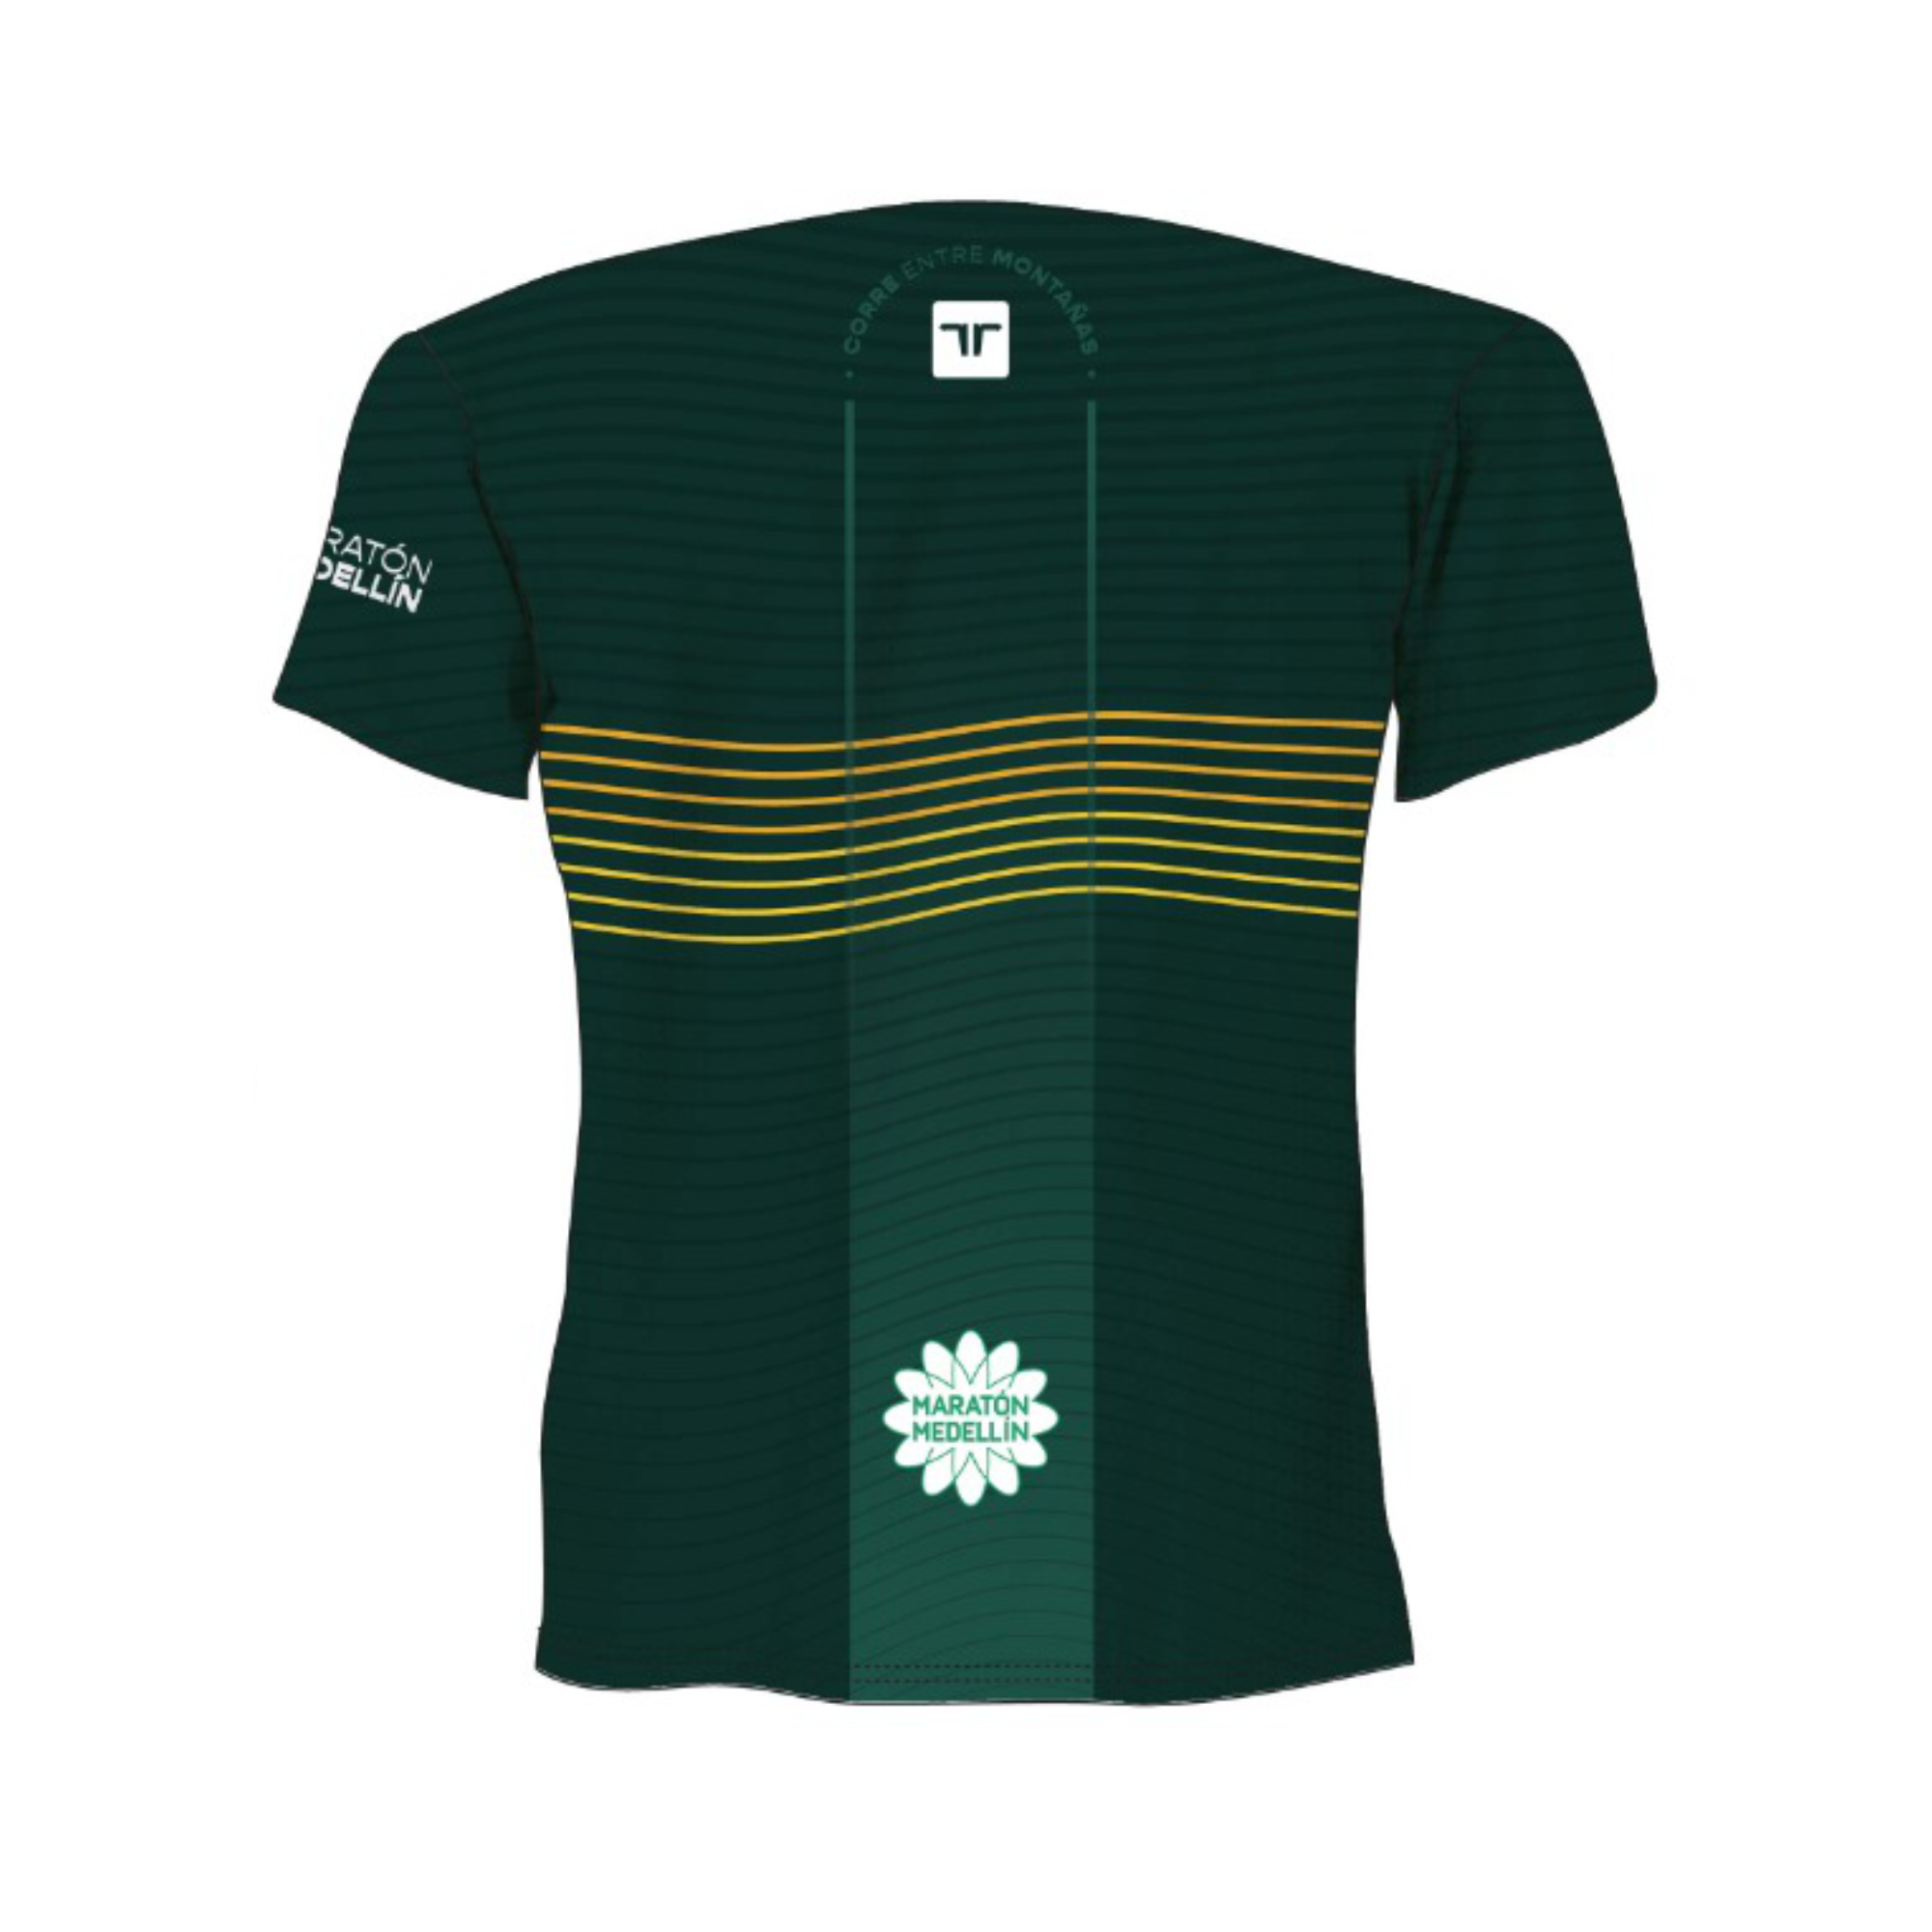 Camiseta Maratón Medellín Varones Verde Entre Líneas 2023